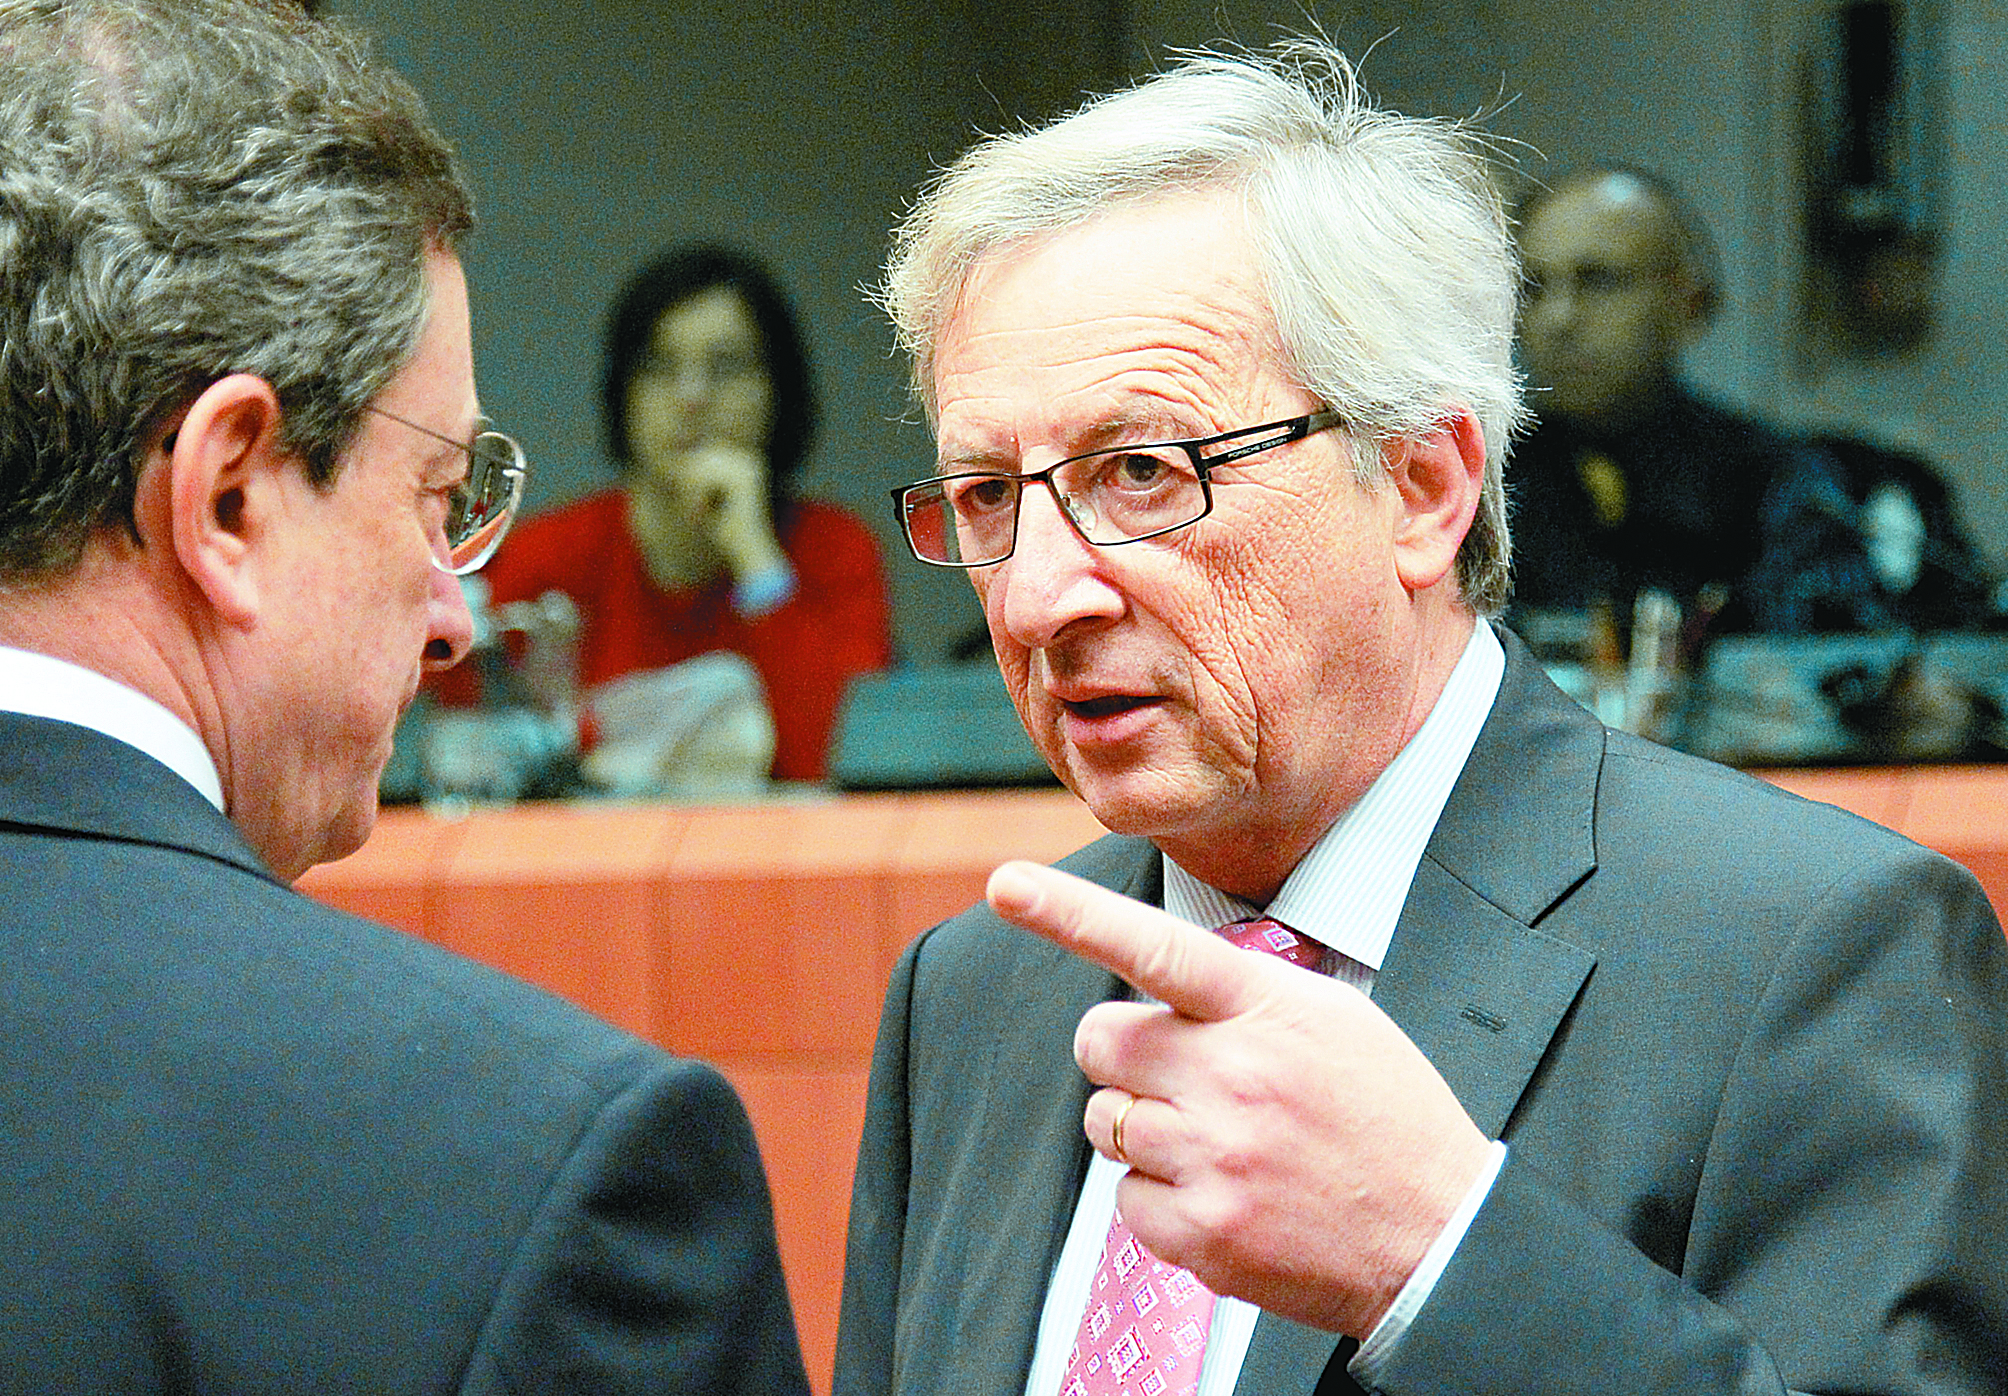 Σχέδιο δήλωσης για ελάφρυνση χρέους εξετάζουν ΕΕ-ΕΚΤ